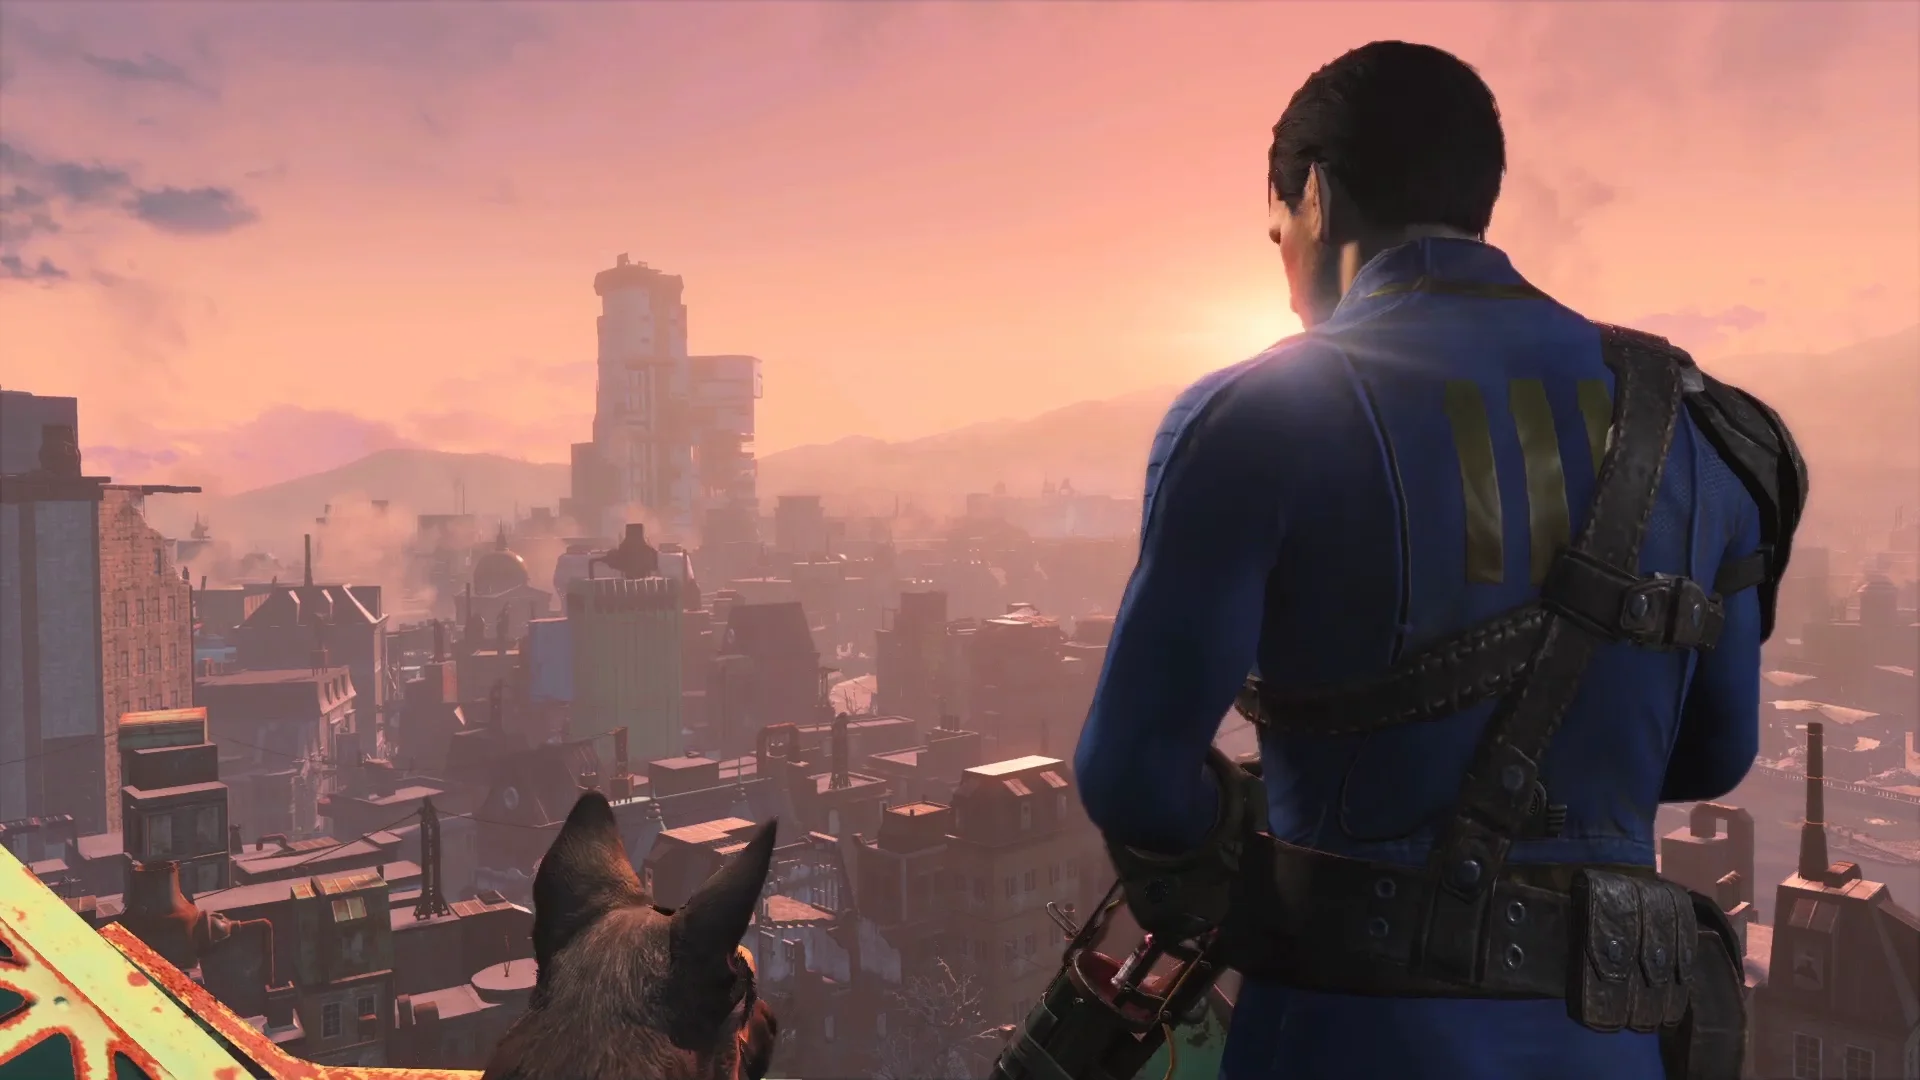 Бывший разработчик Fallout 4 рассказал об отсылке в игре к старой адвенчуре Хидео Кодзимы - фото 1